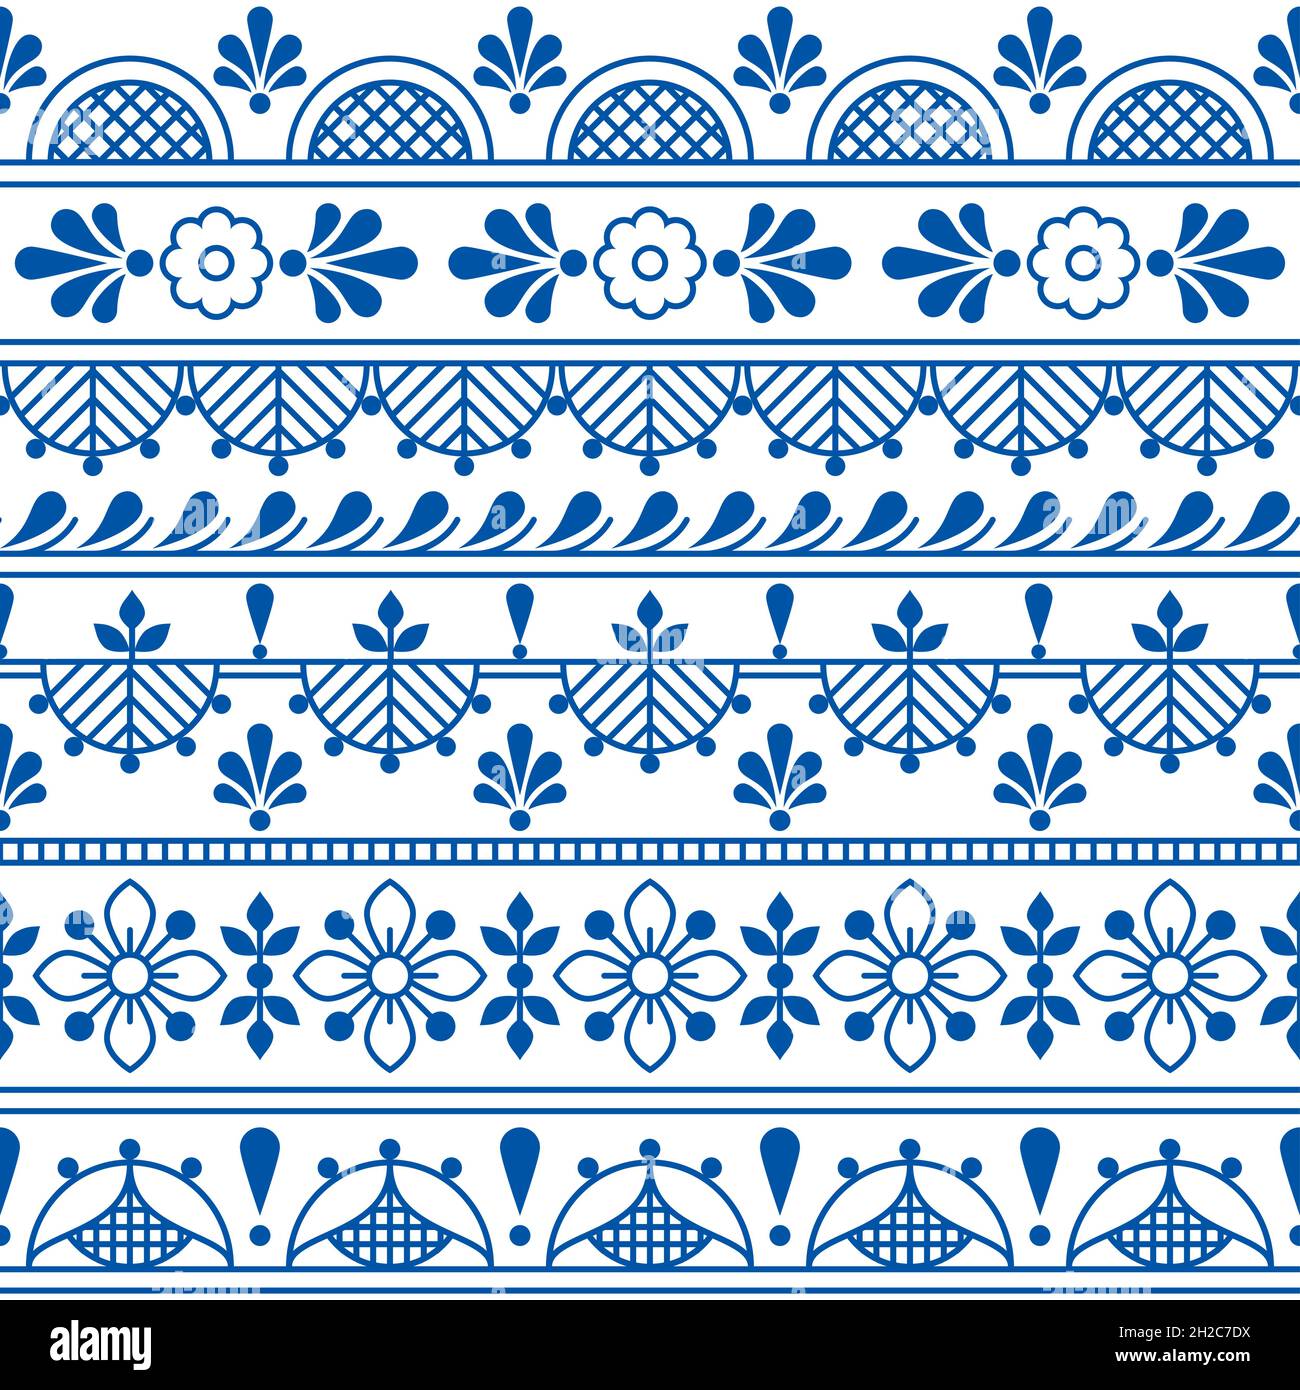 Skandinavischer Textil- oder Stoffdruck Vektor nahtloses Muster mit Blumen, traditionelle folkloristische Umrissstickerei und Spitzen-Kunstdesign Stock Vektor